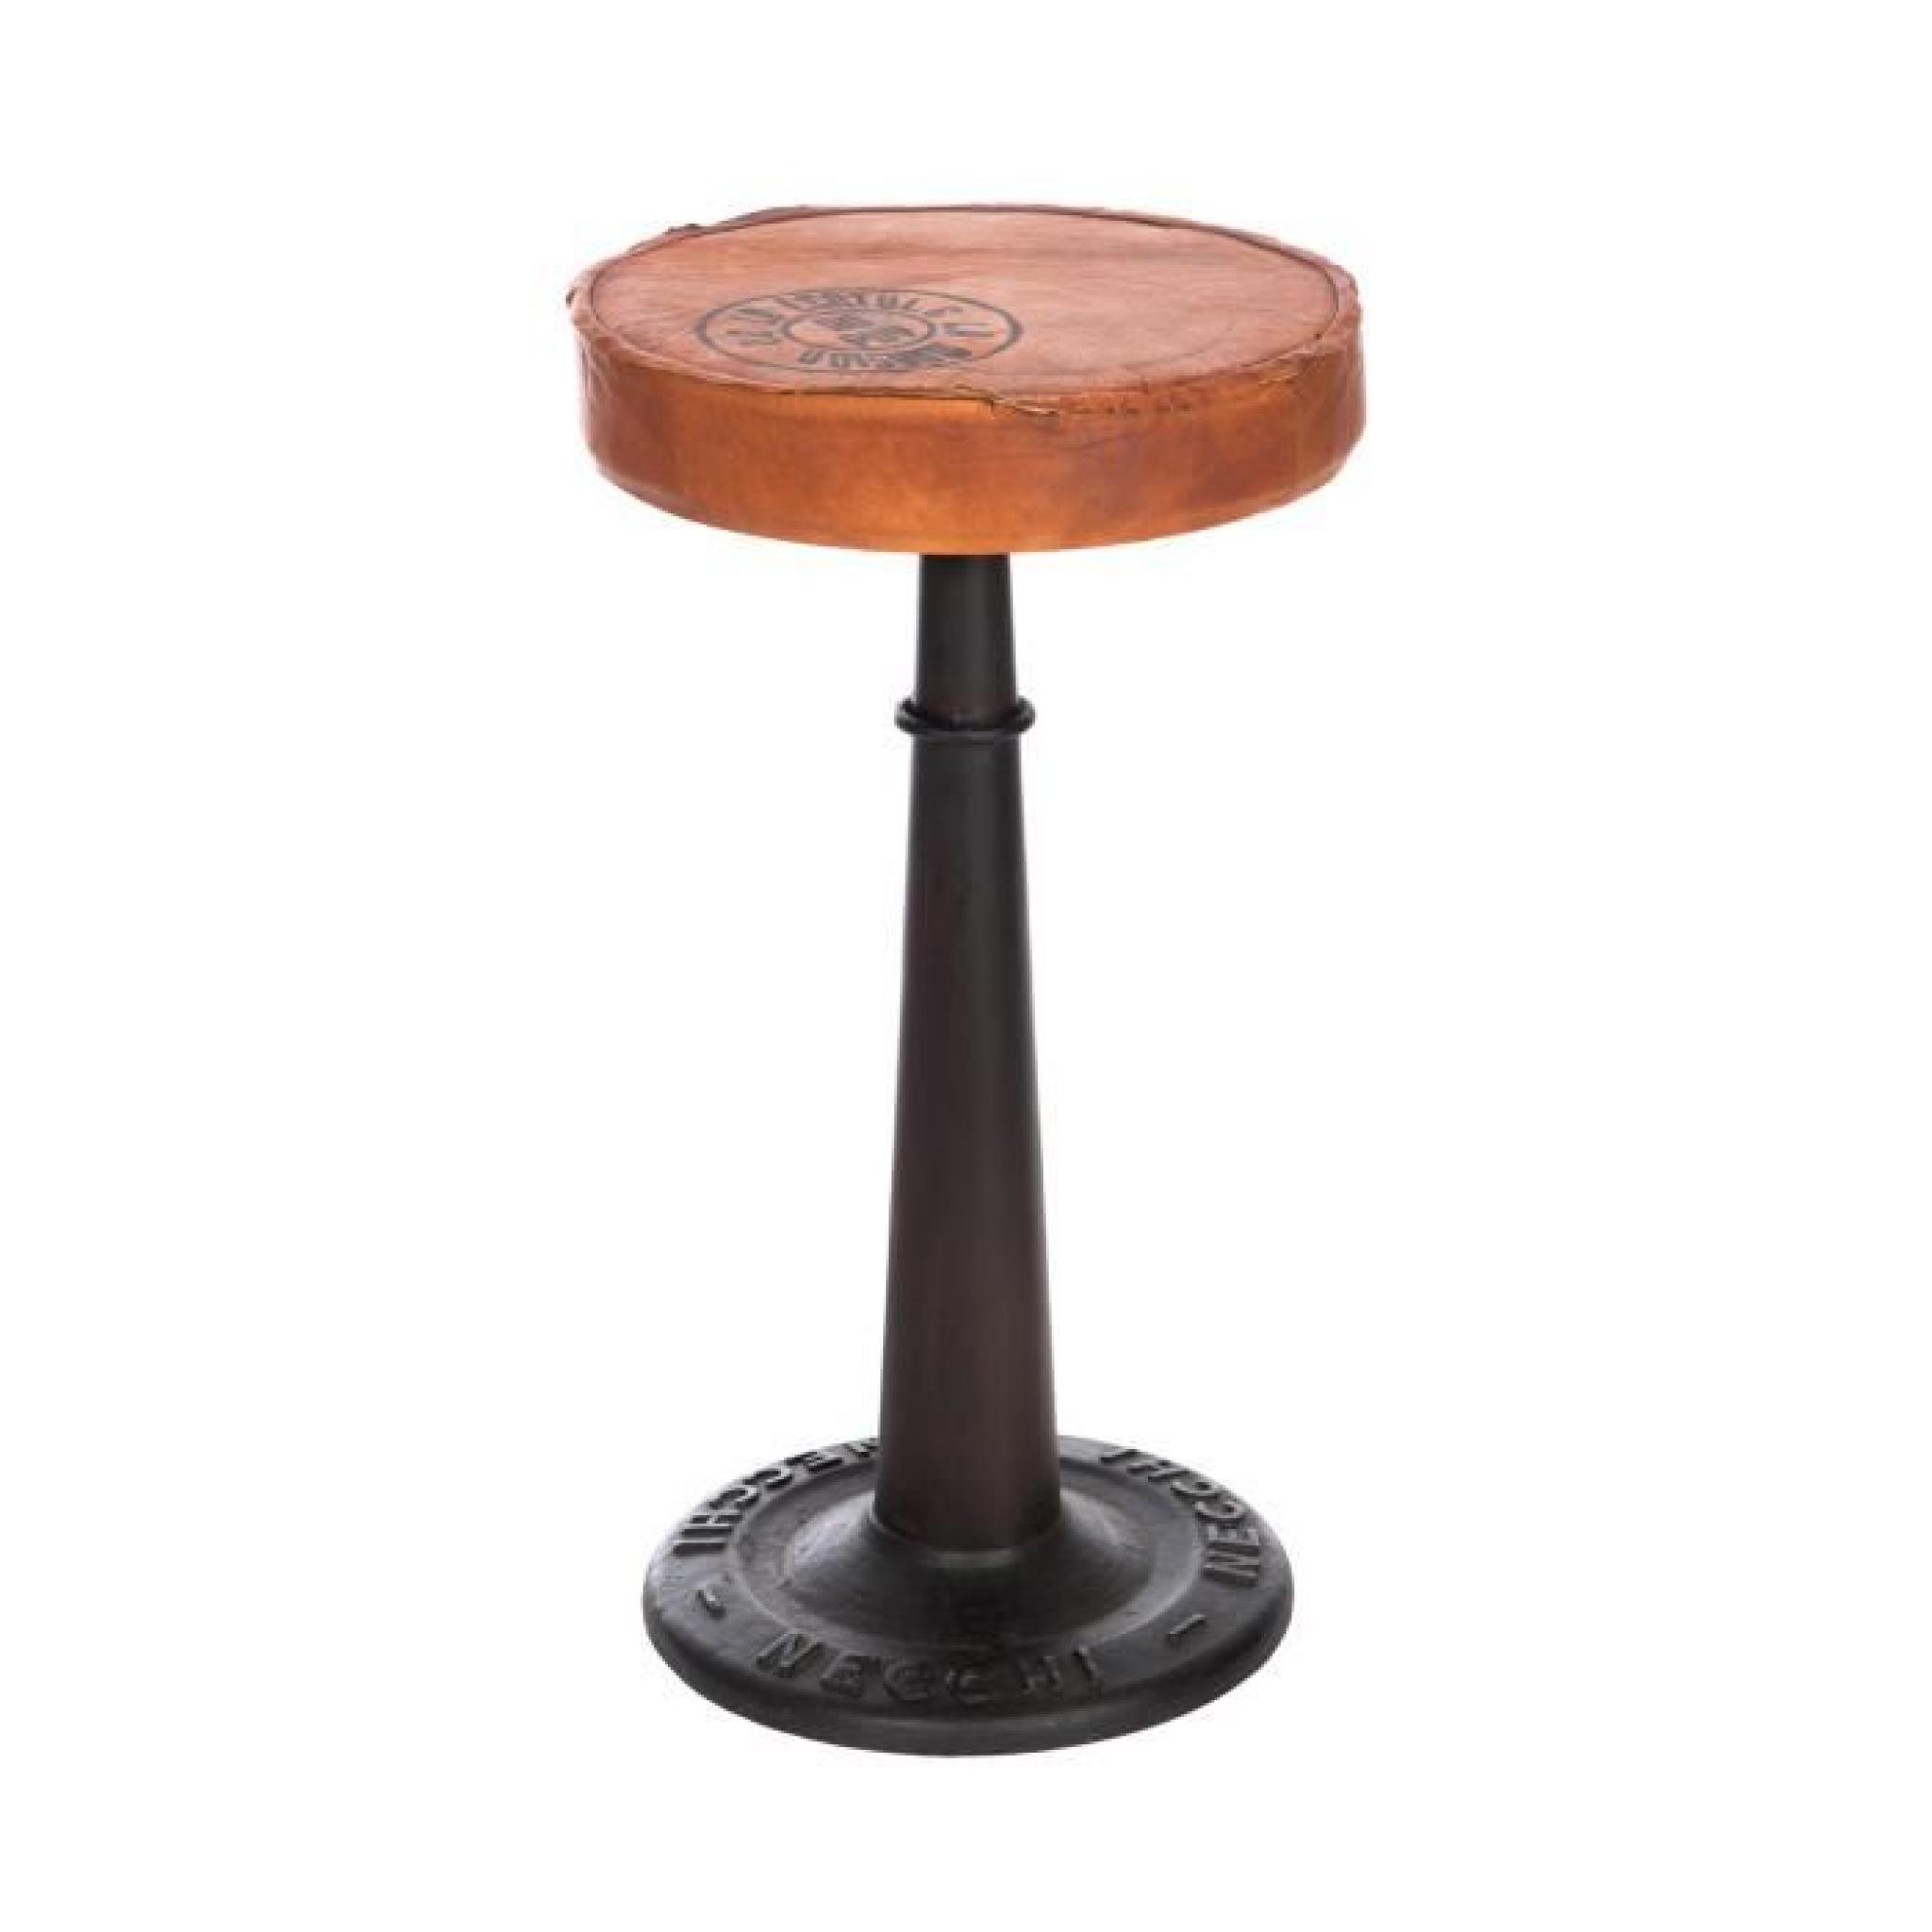 Chaise de bar cuir et pieds métal - coloris marron